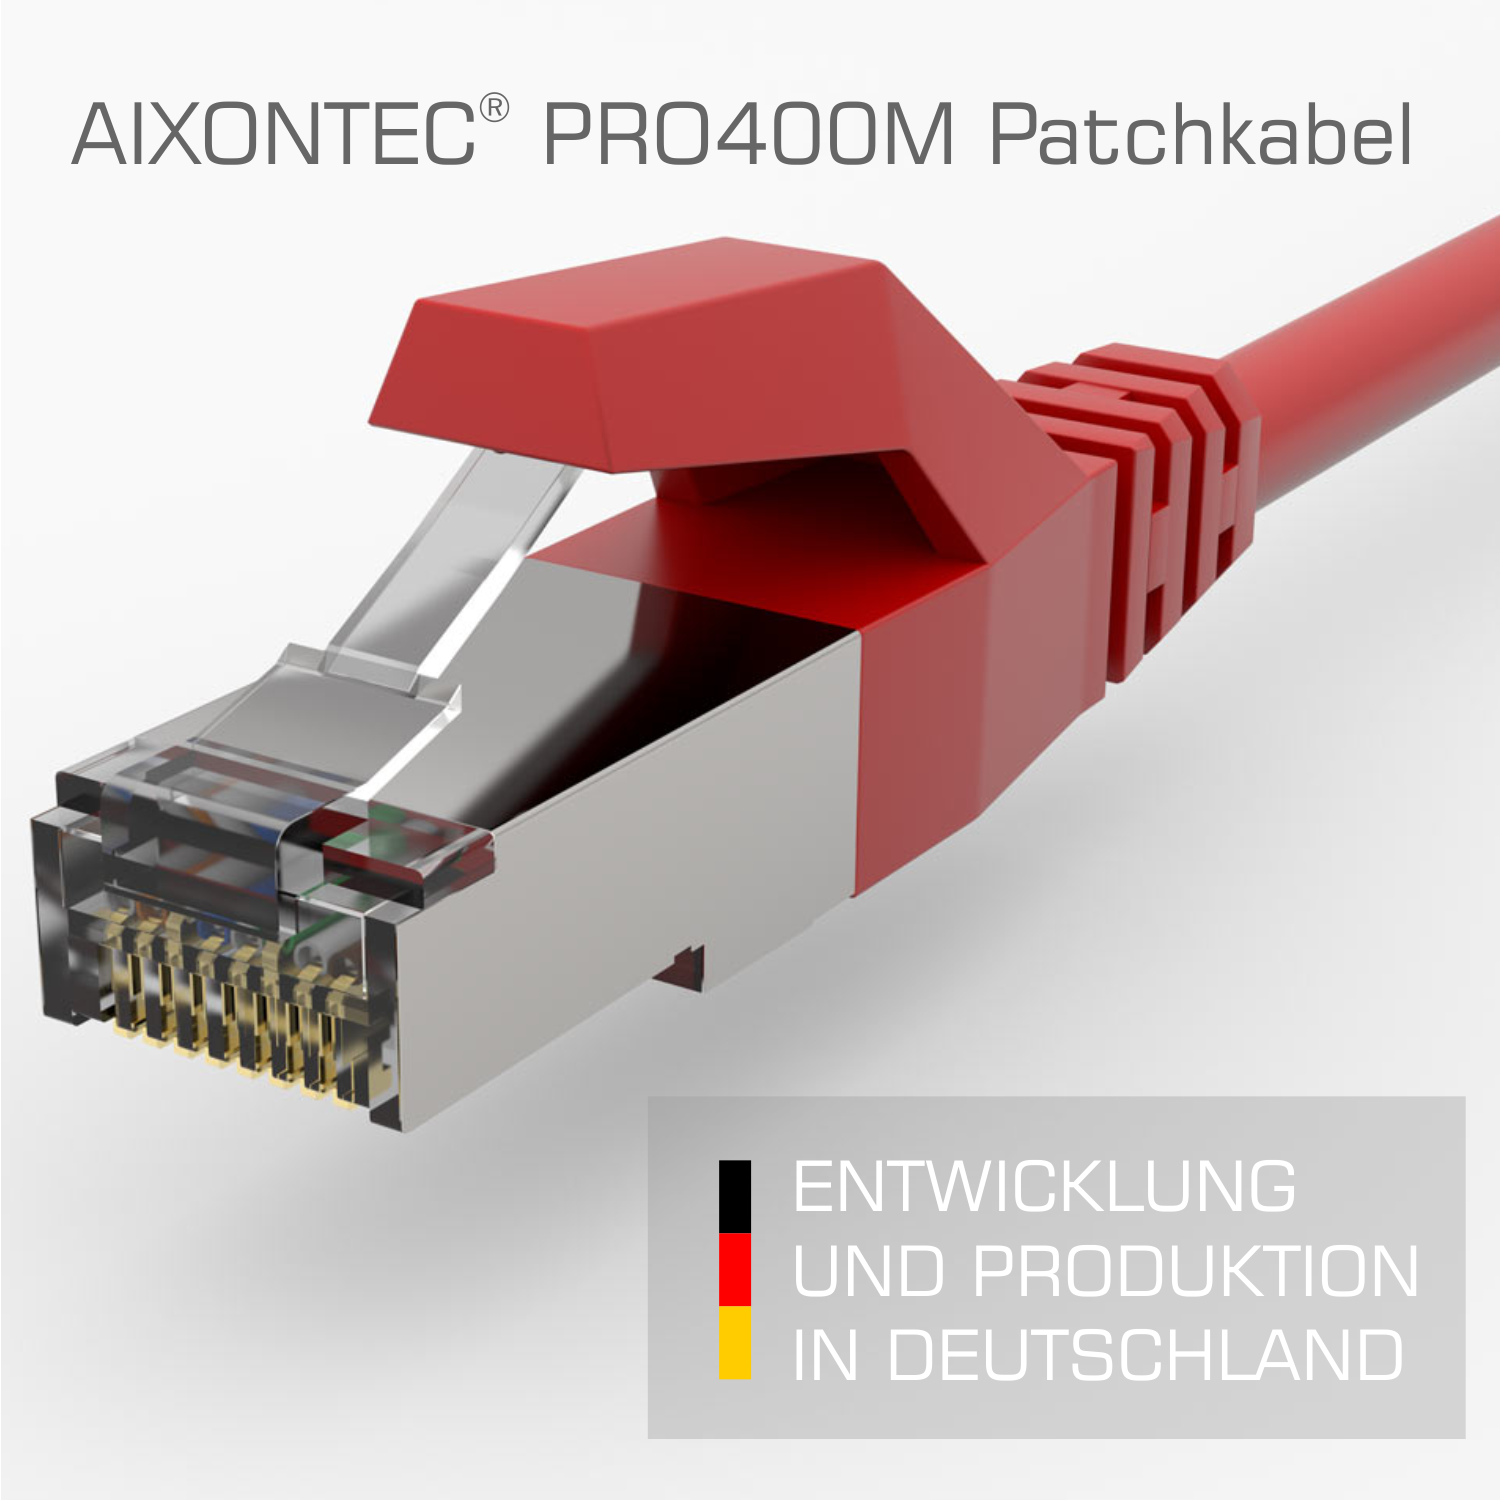 Gigabit, 1,0m 10 Patchkabel RJ45 Ethernetkabel Lankabel Cat.6 Netzwerkkabel, m 1,0 AIXONTEC